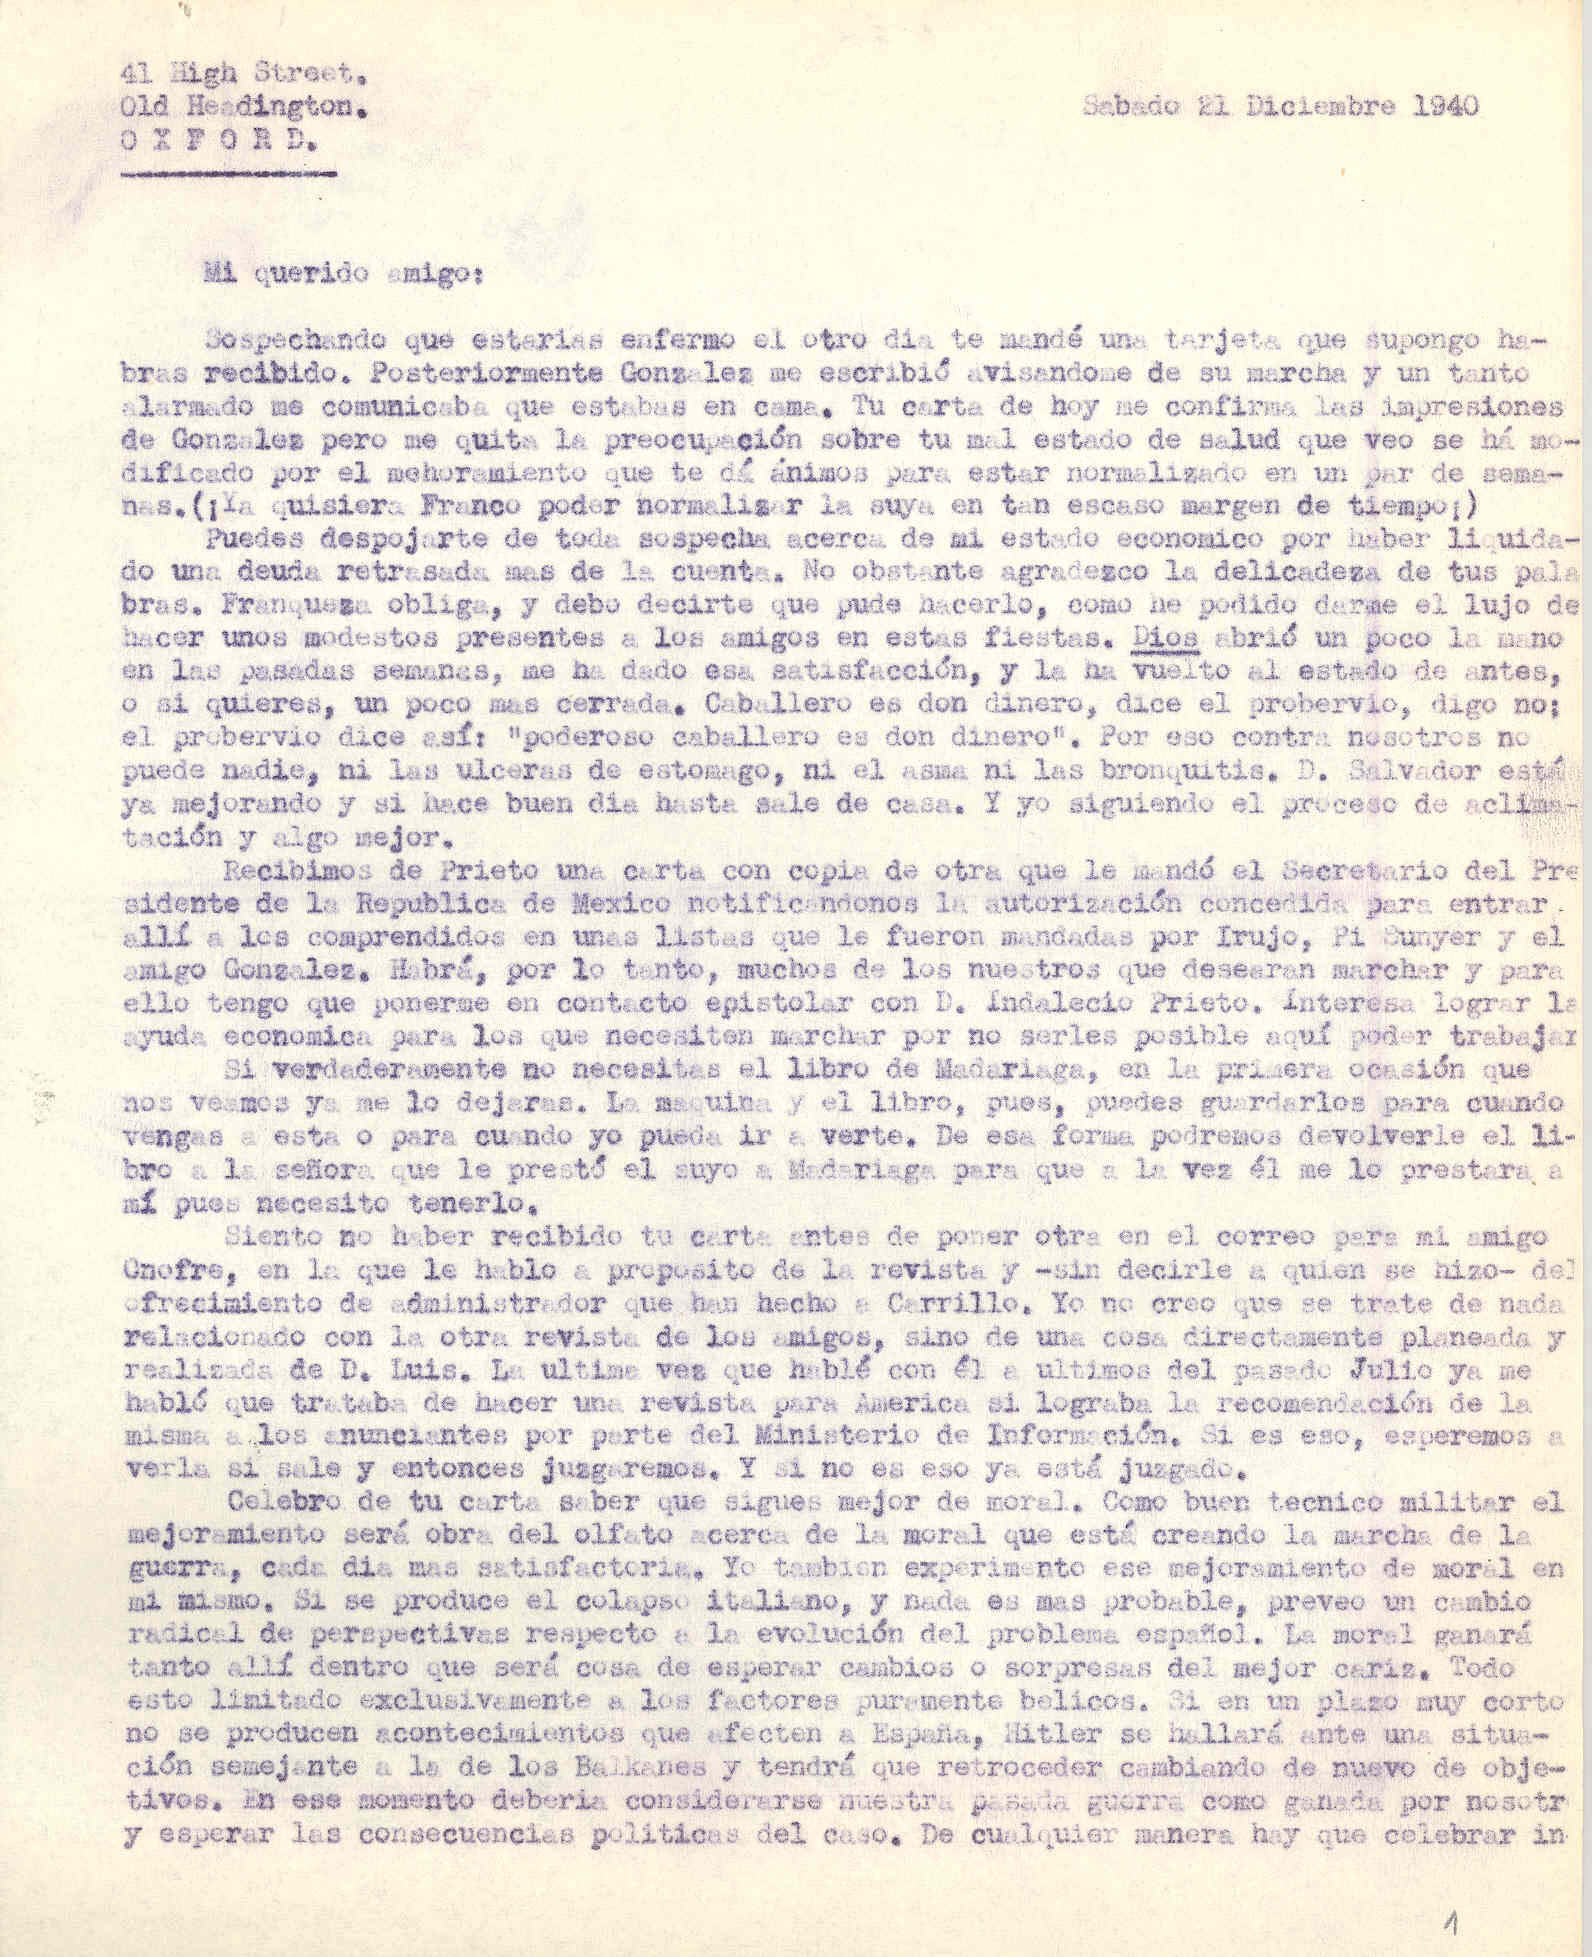 Carta a Segismundo Casado hablando de una carta recibida por Prieto del secretario del Presidente de la República de México en la que dan autorización para entrar en ese país.